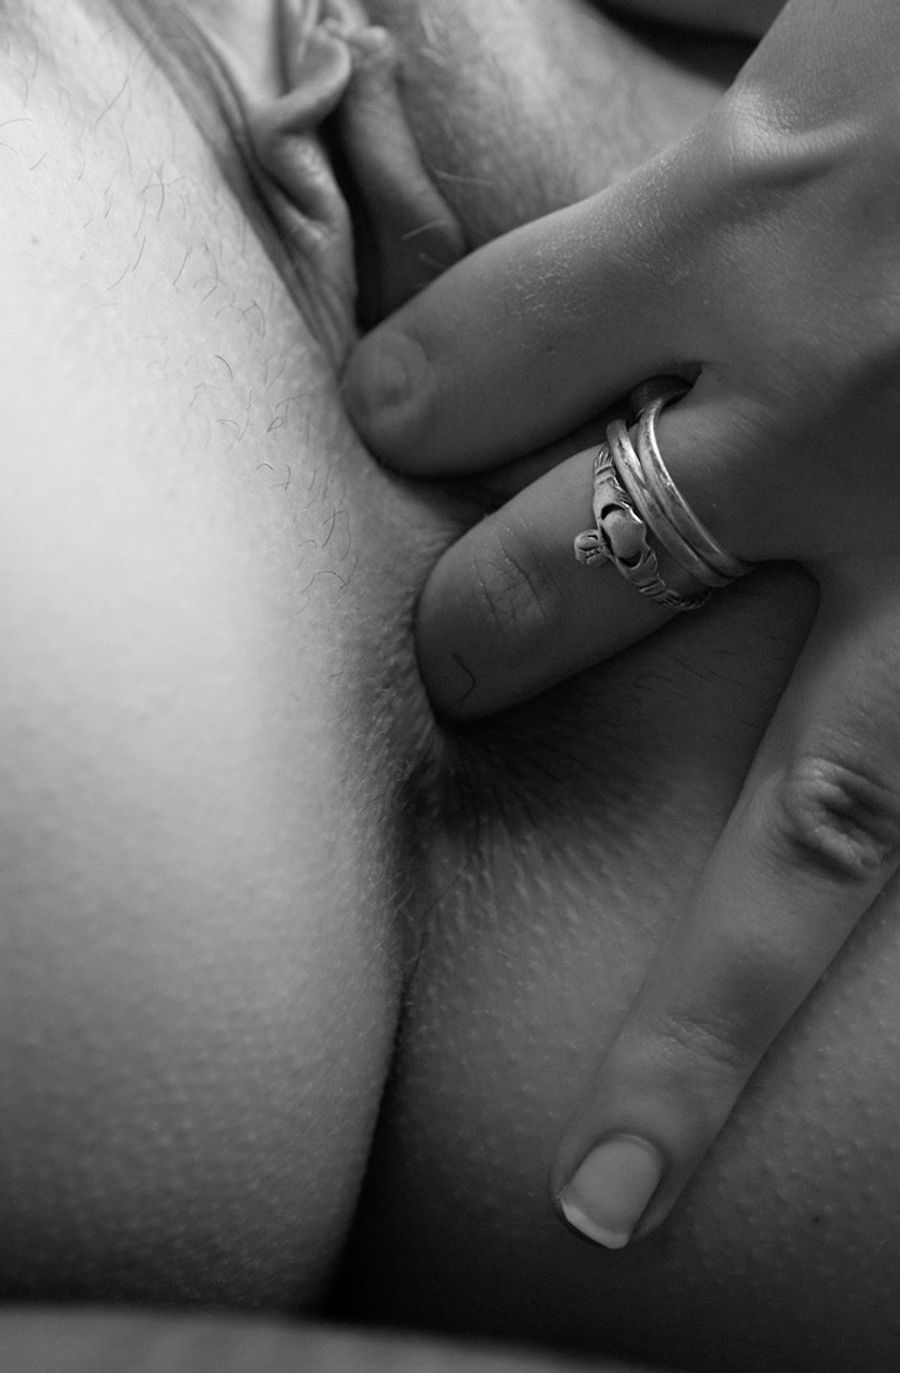 Black On White Xxx - black and white Photo Gallery: Porn Pics, Sex Photos & XXX GIFs